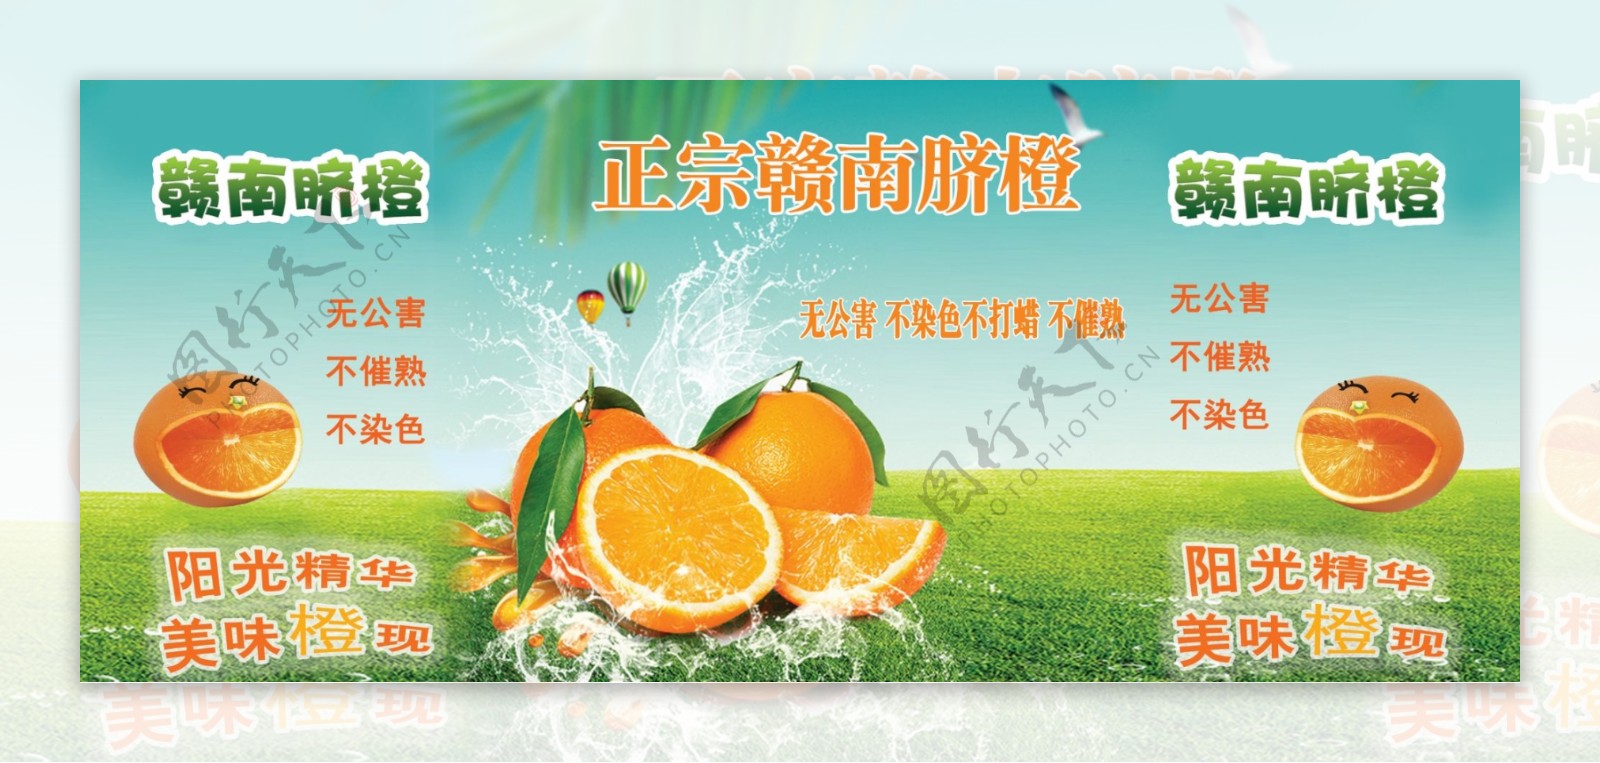 赣南脐橙广告宣传水果